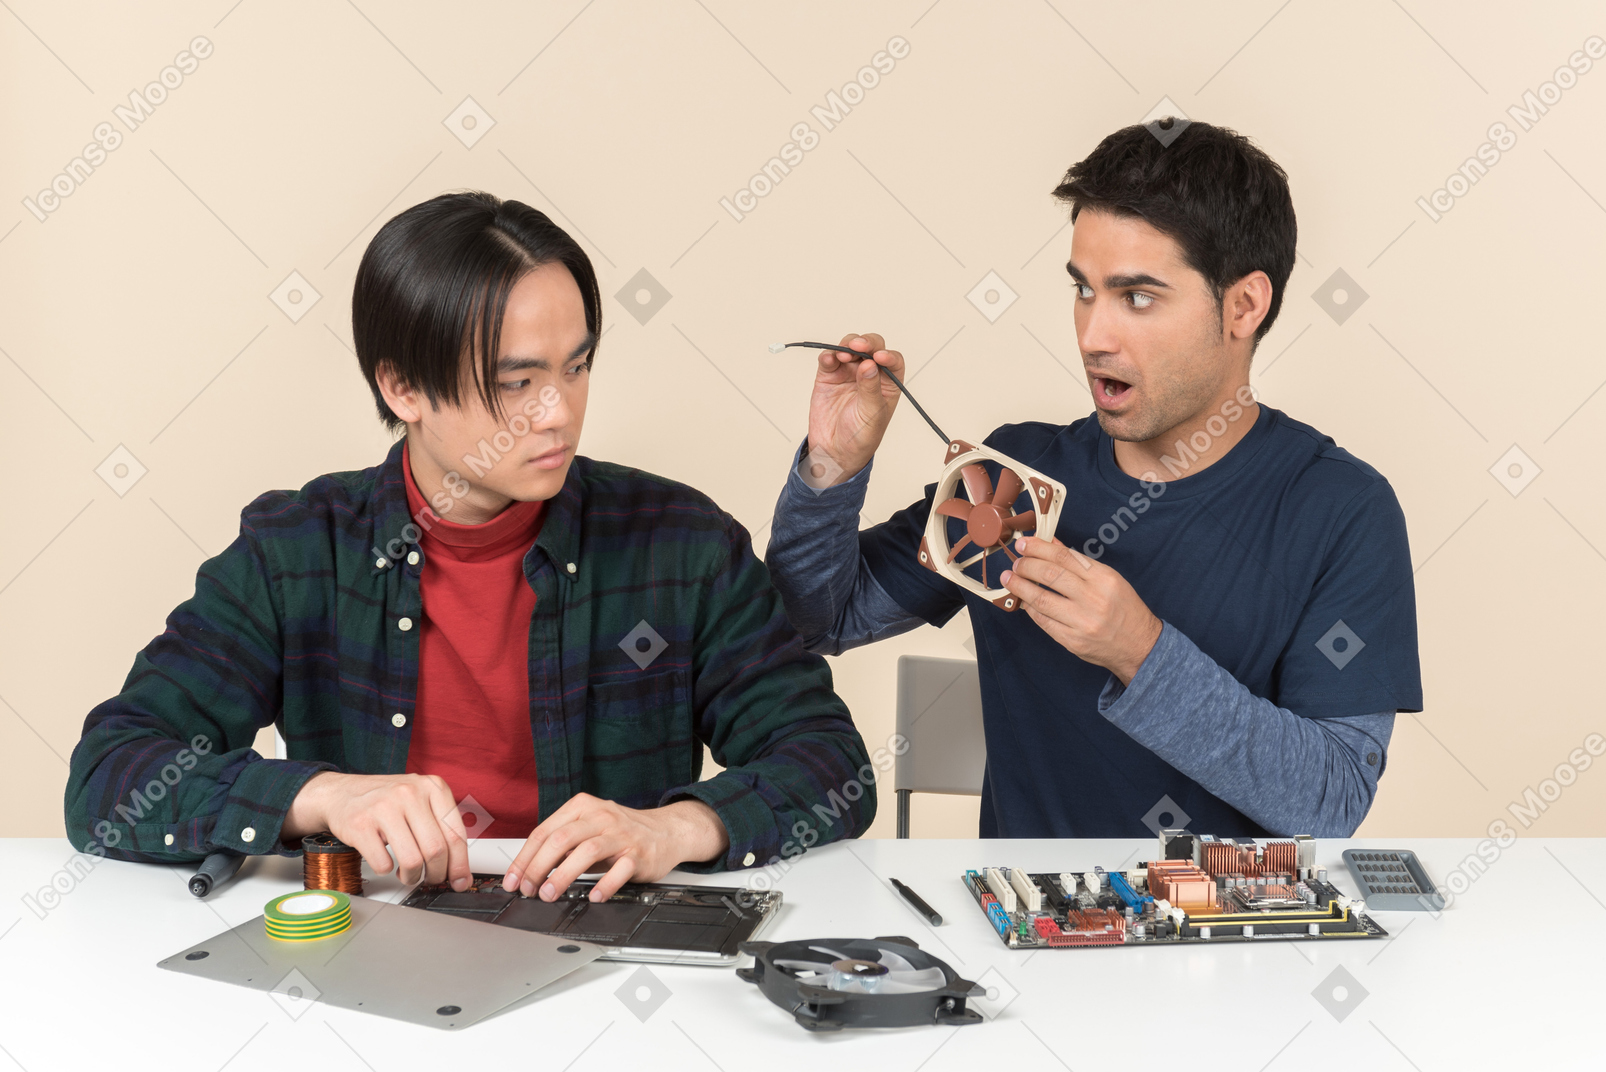 Zwei junge geeks sitzen am tisch mit details und einer von ihnen sieht überrascht aus